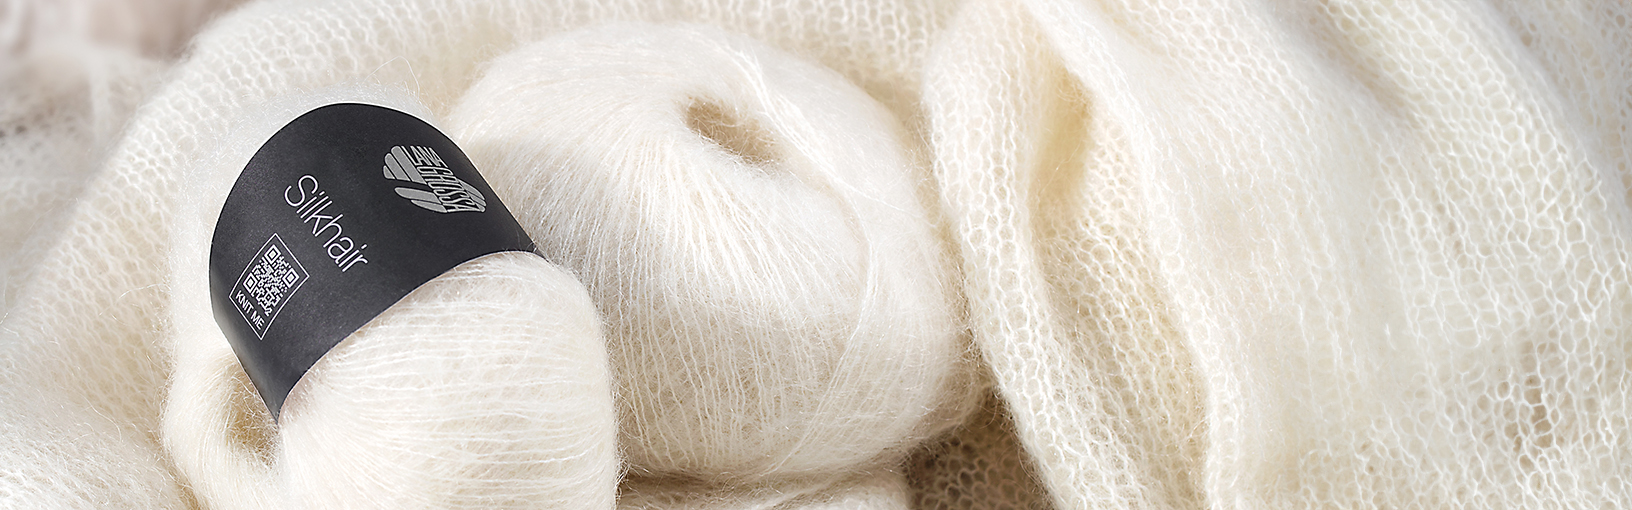 Garn av høy kvalitet til strikking, hekling og toving LANA GROSSA<br> ull & garn